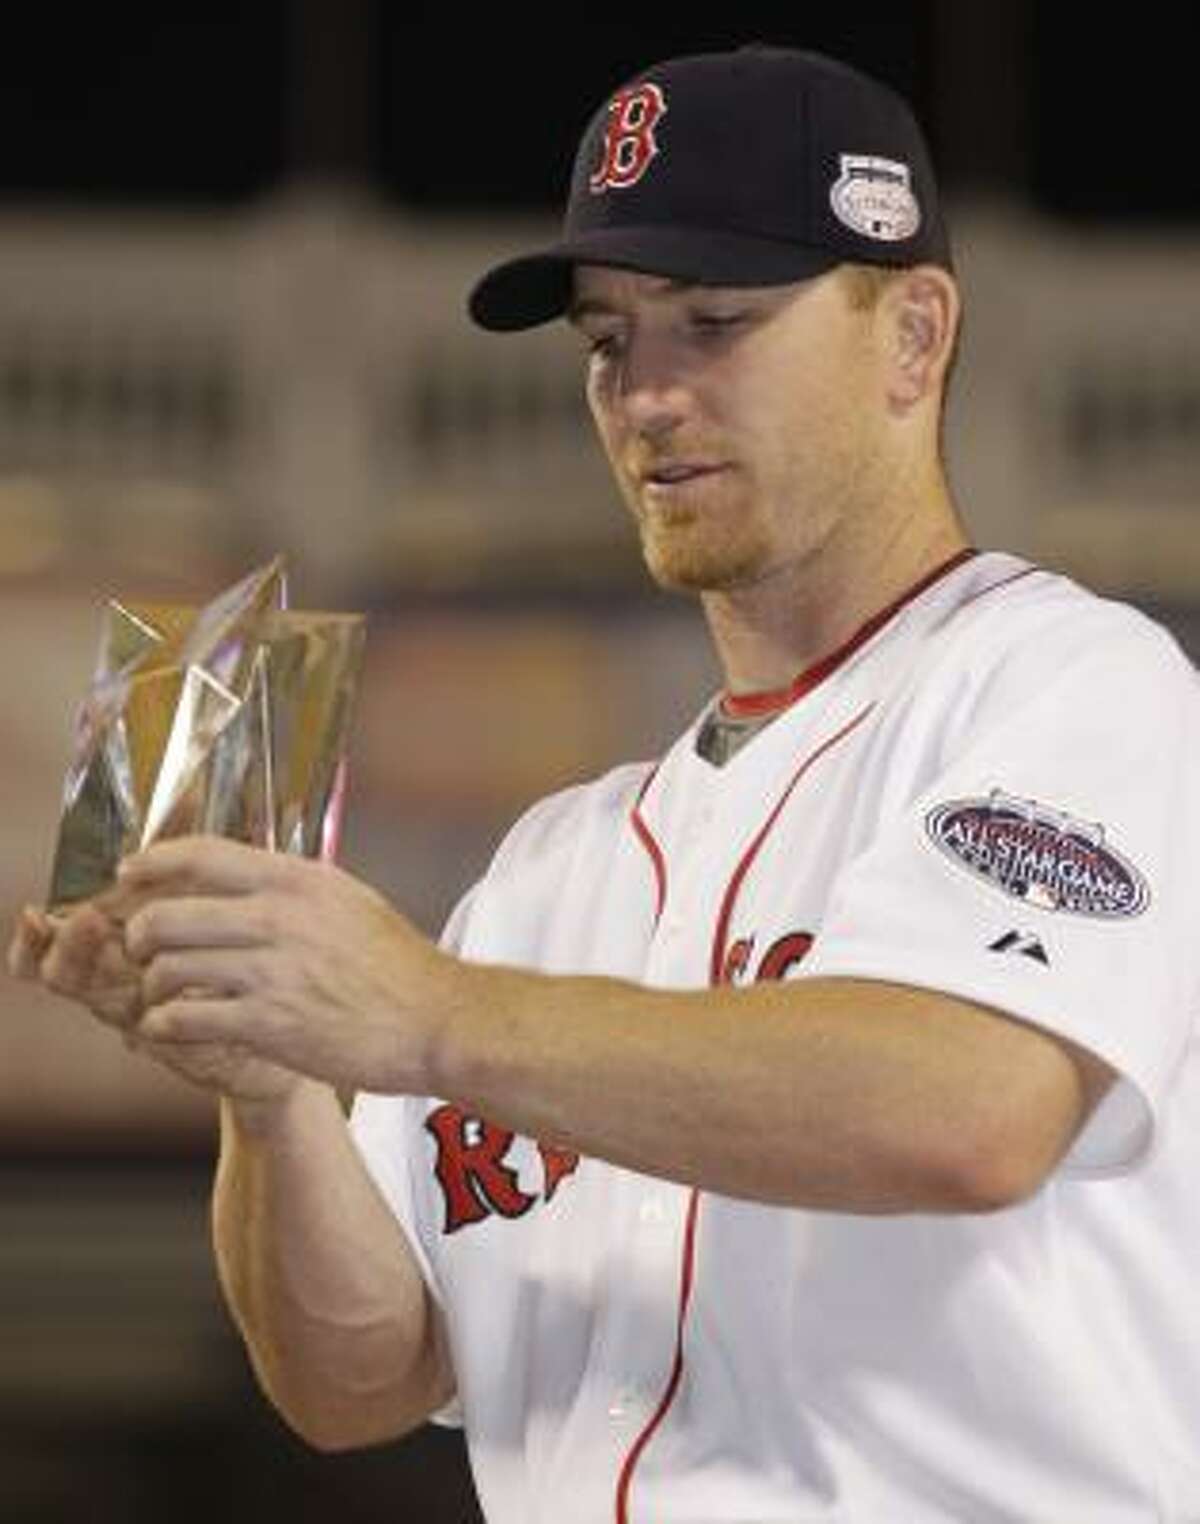 Boston OF J.D. Drew wins All-Star game MVP award